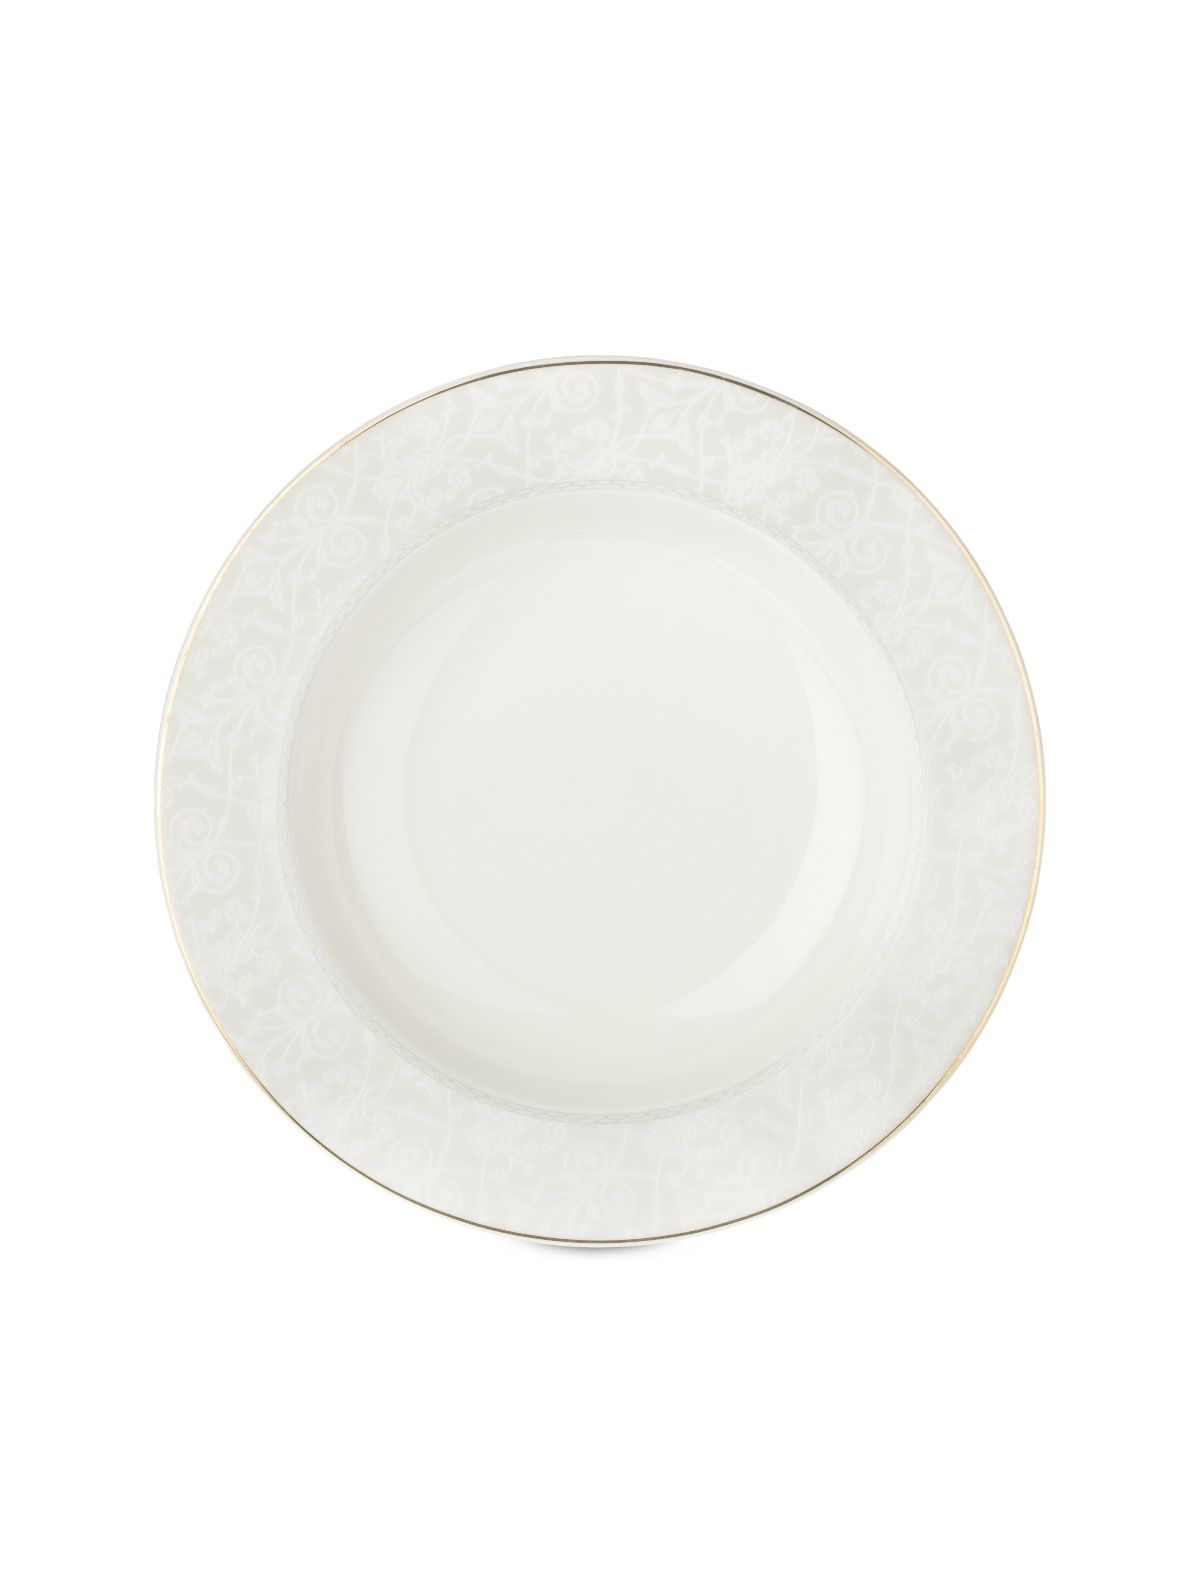 Тарелка суповая ALLURE 21.5см FIORETTA TDP622 тарелка суповая elegance 21 5см fioretta tdp612